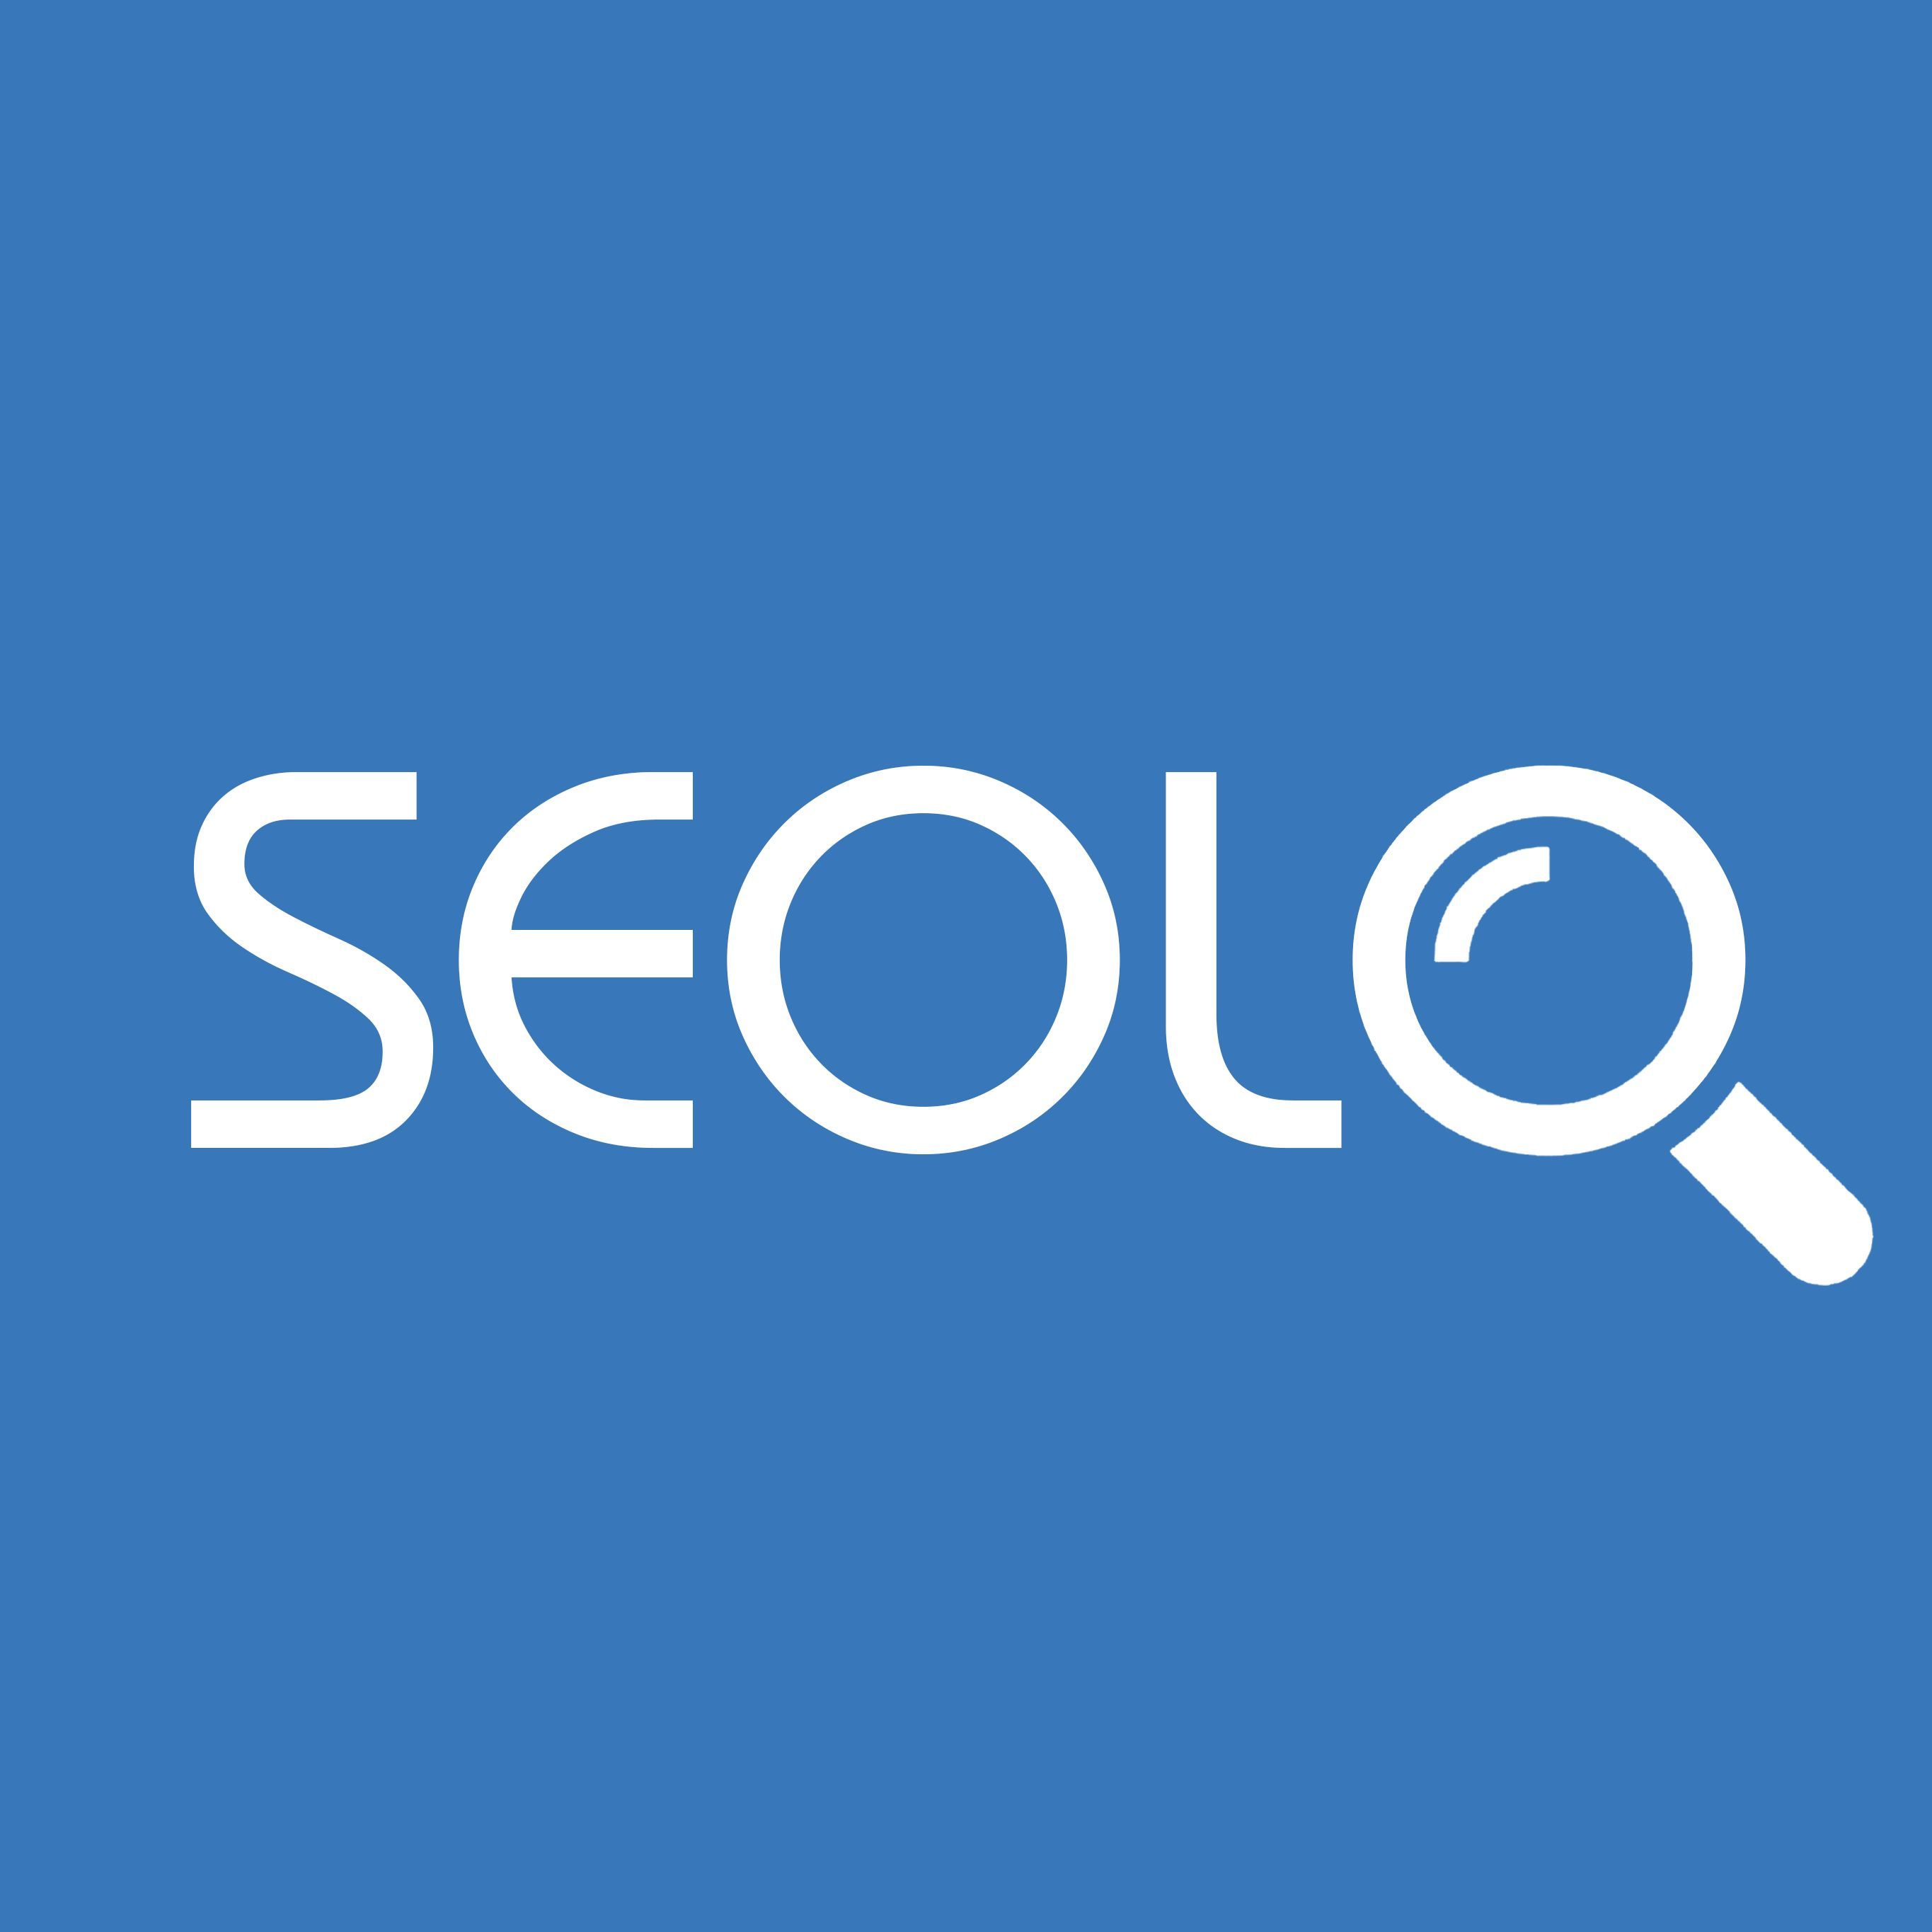 Seolo WordPress theme